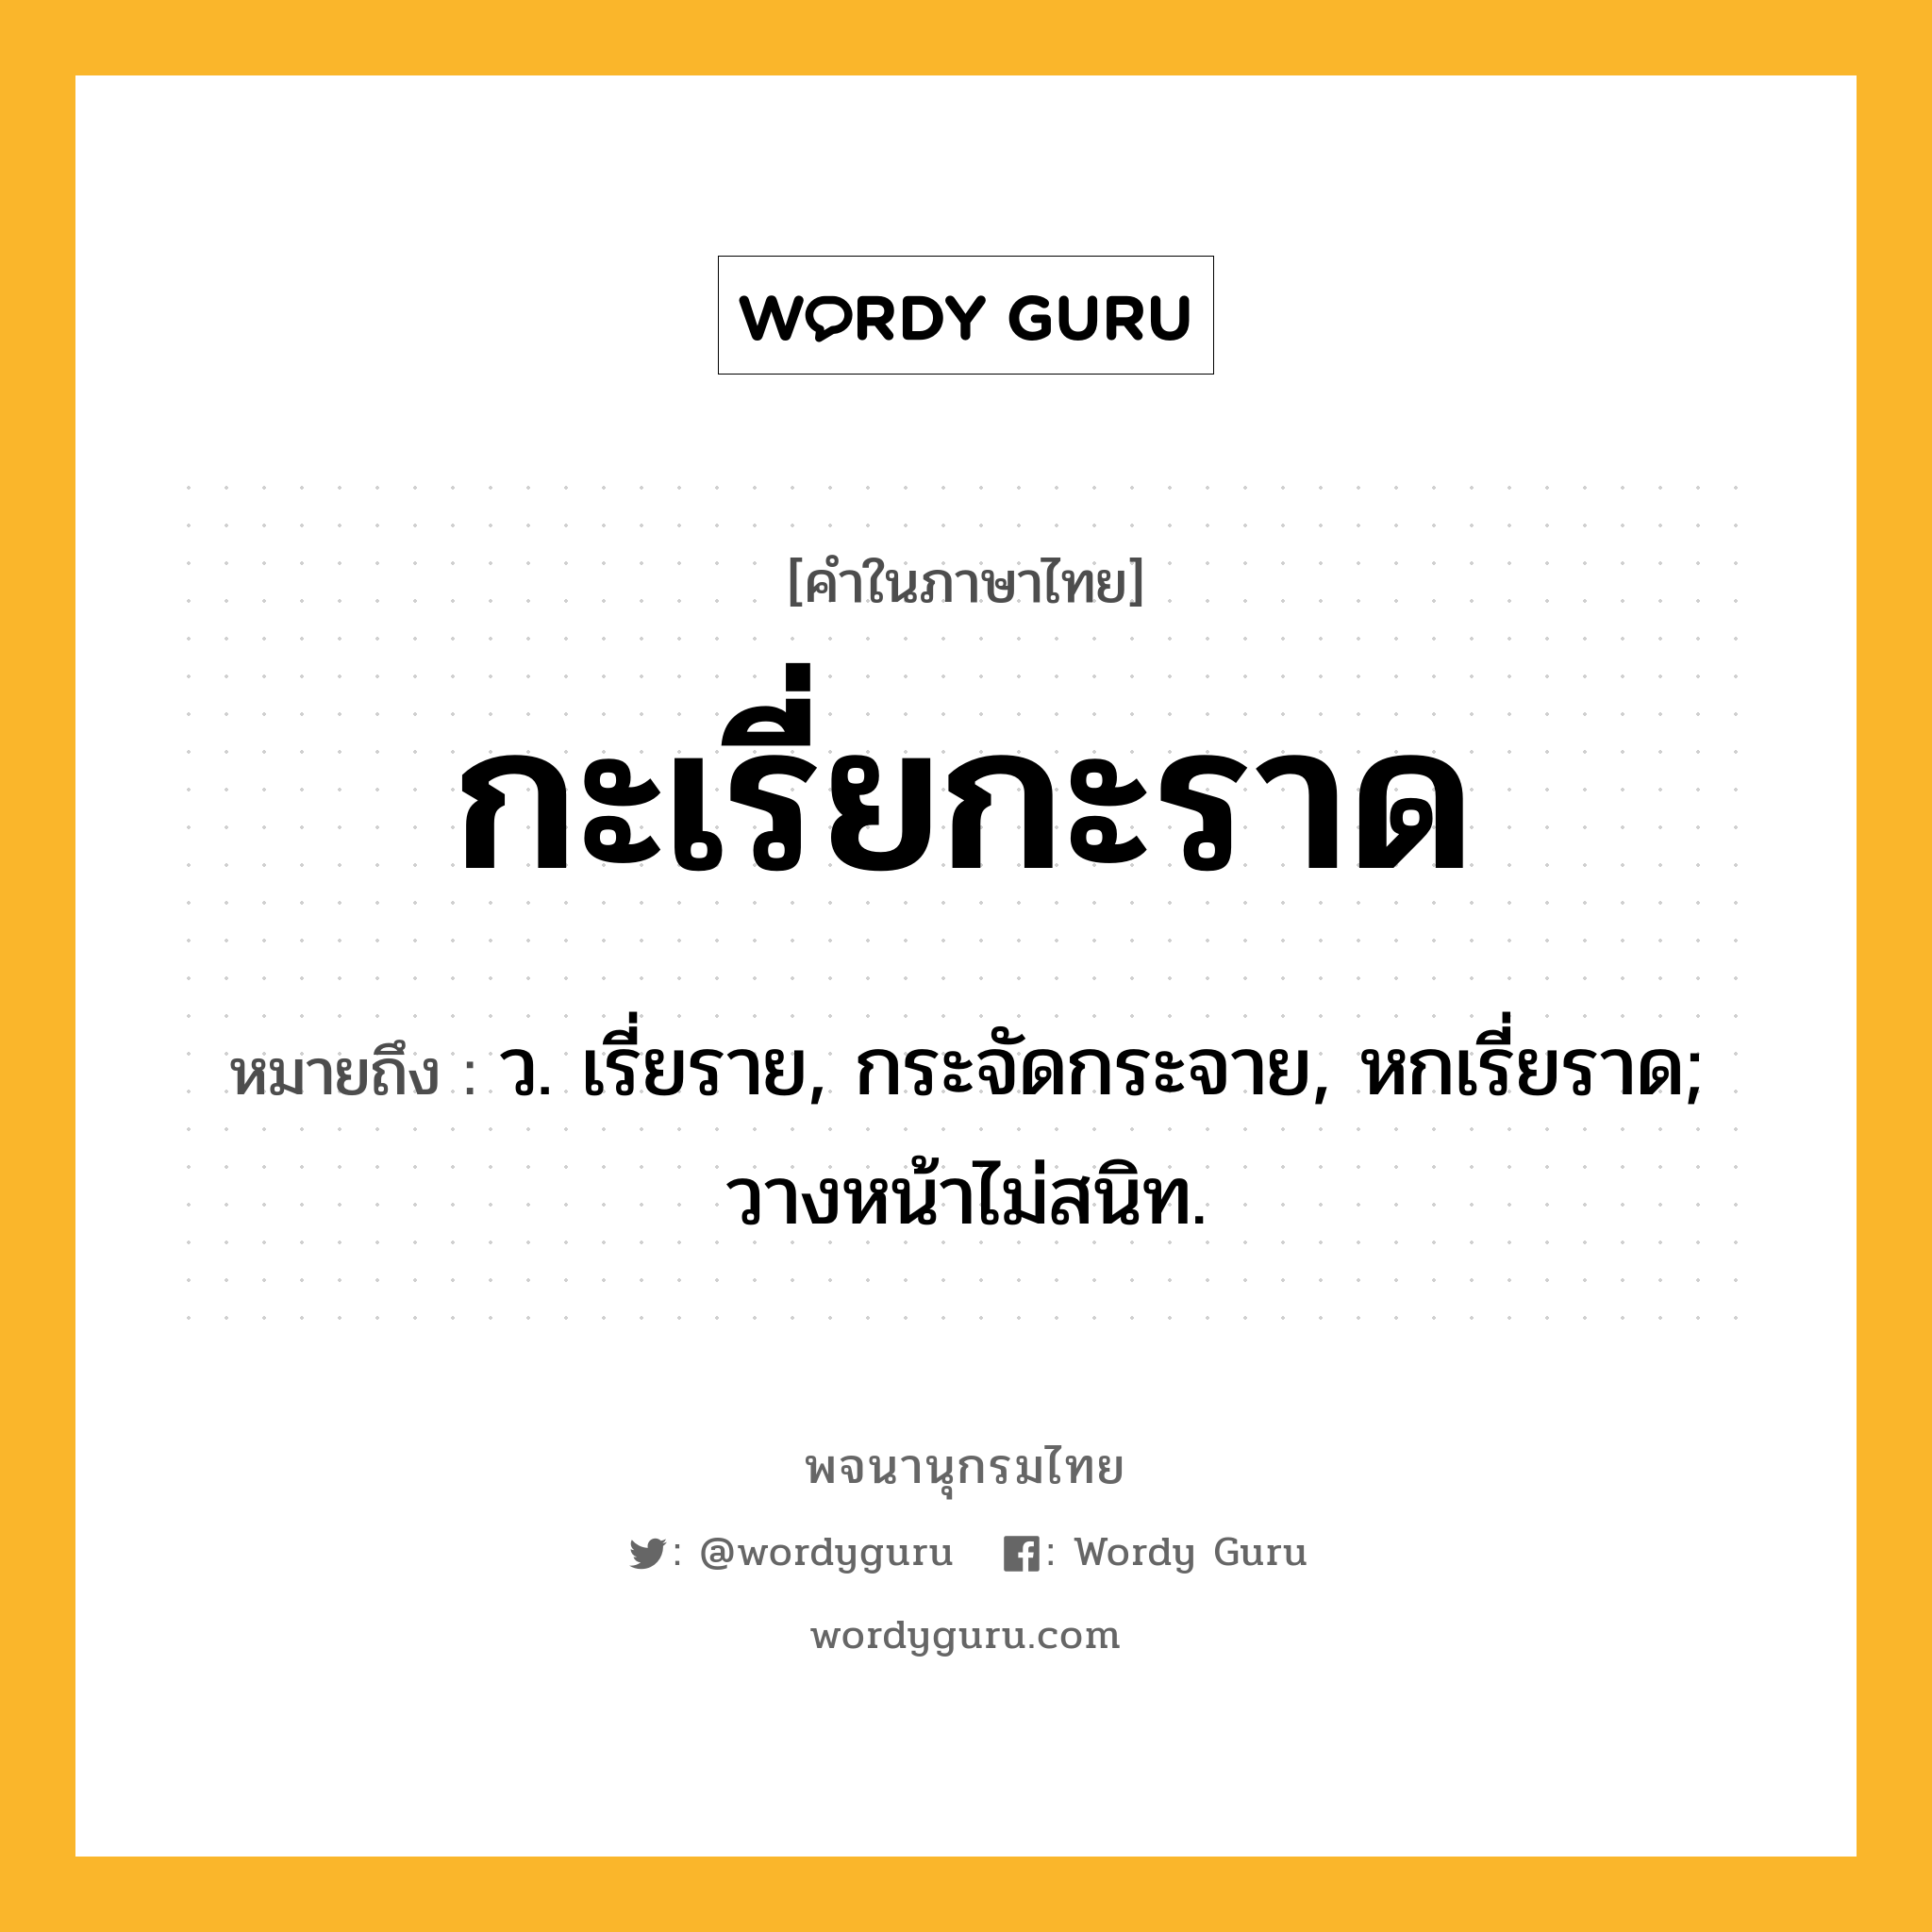 กะเรี่ยกะราด หมายถึงอะไร?, คำในภาษาไทย กะเรี่ยกะราด หมายถึง ว. เรี่ยราย, กระจัดกระจาย, หกเรี่ยราด; วางหน้าไม่สนิท.